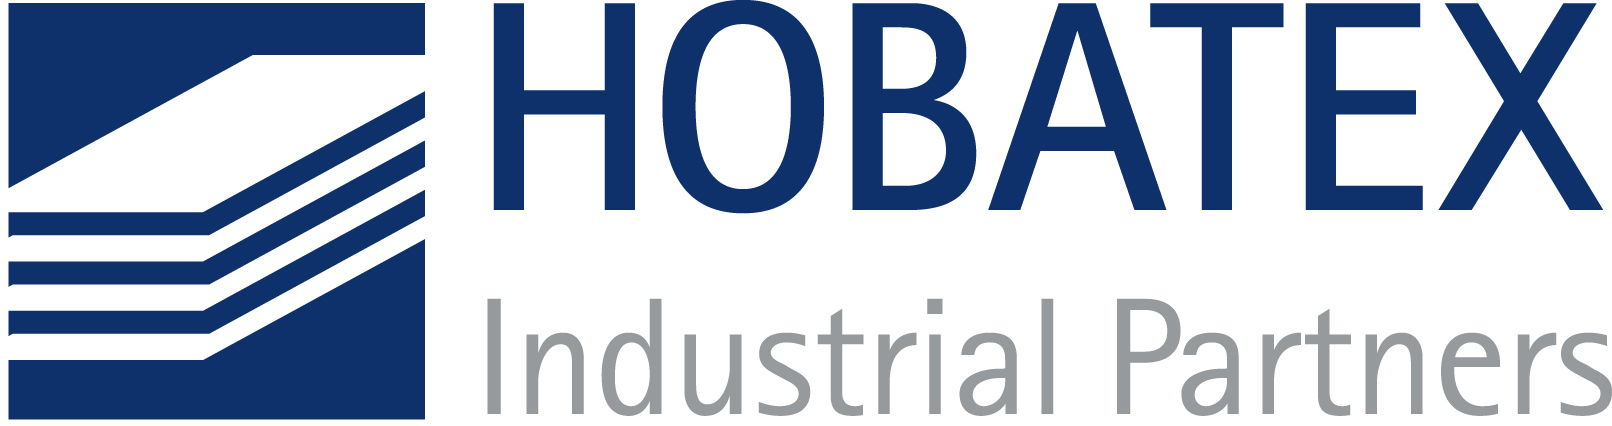 HOBATEX Industrial Partners